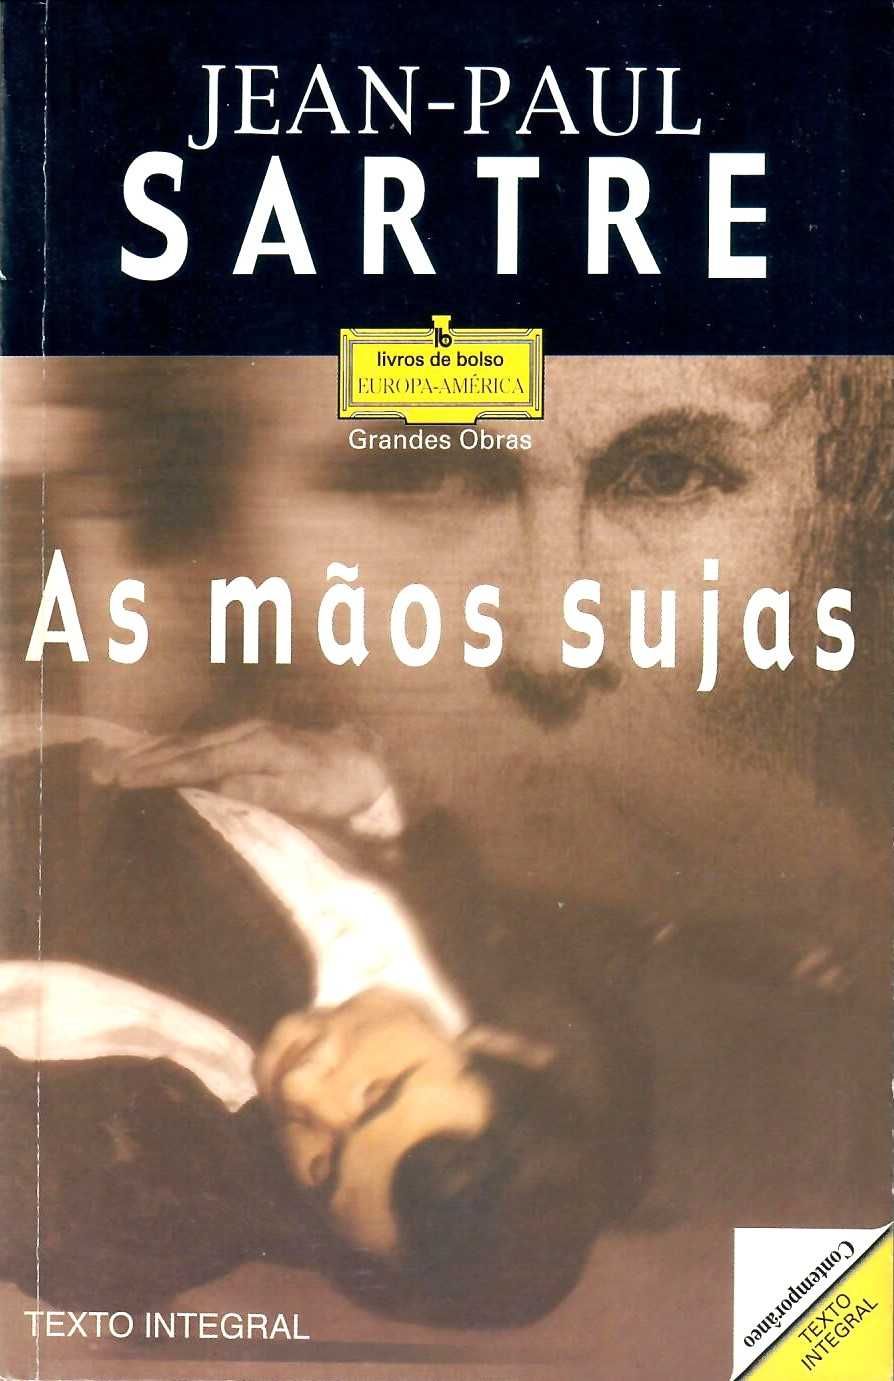 Jean-Paul Sartre  «Os Sequestrados de Altona»  + 2 títulos